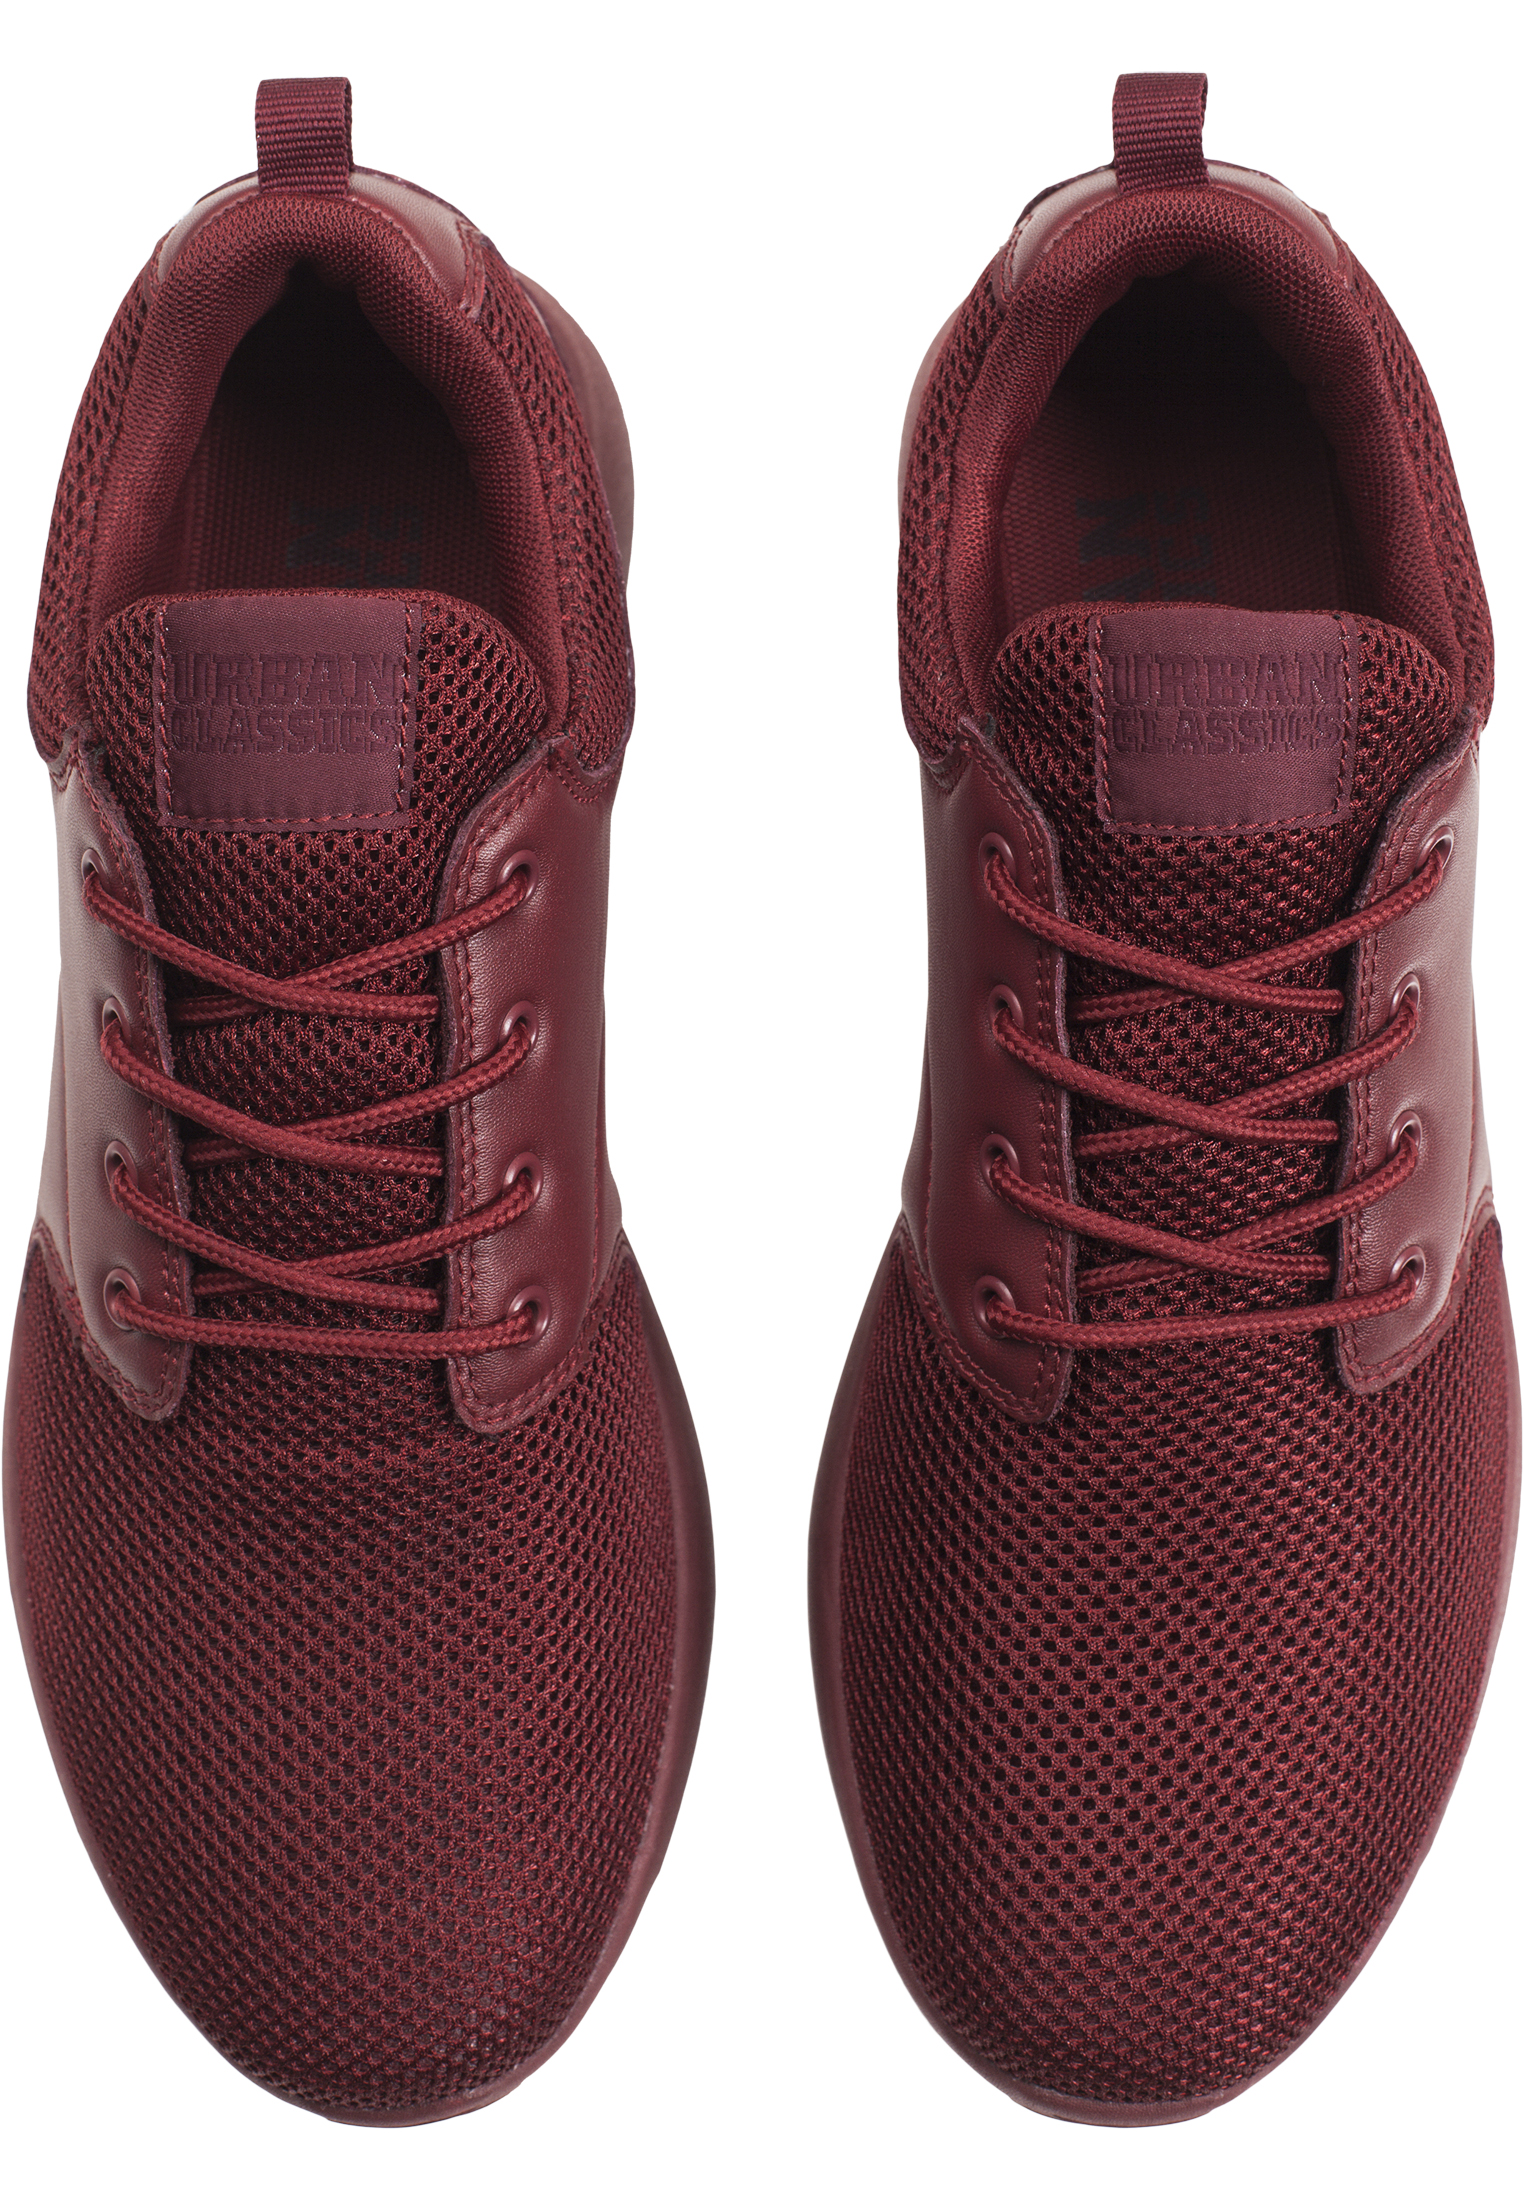 Schuhe Light Runner Shoe in Farbe burgundy/burgundy